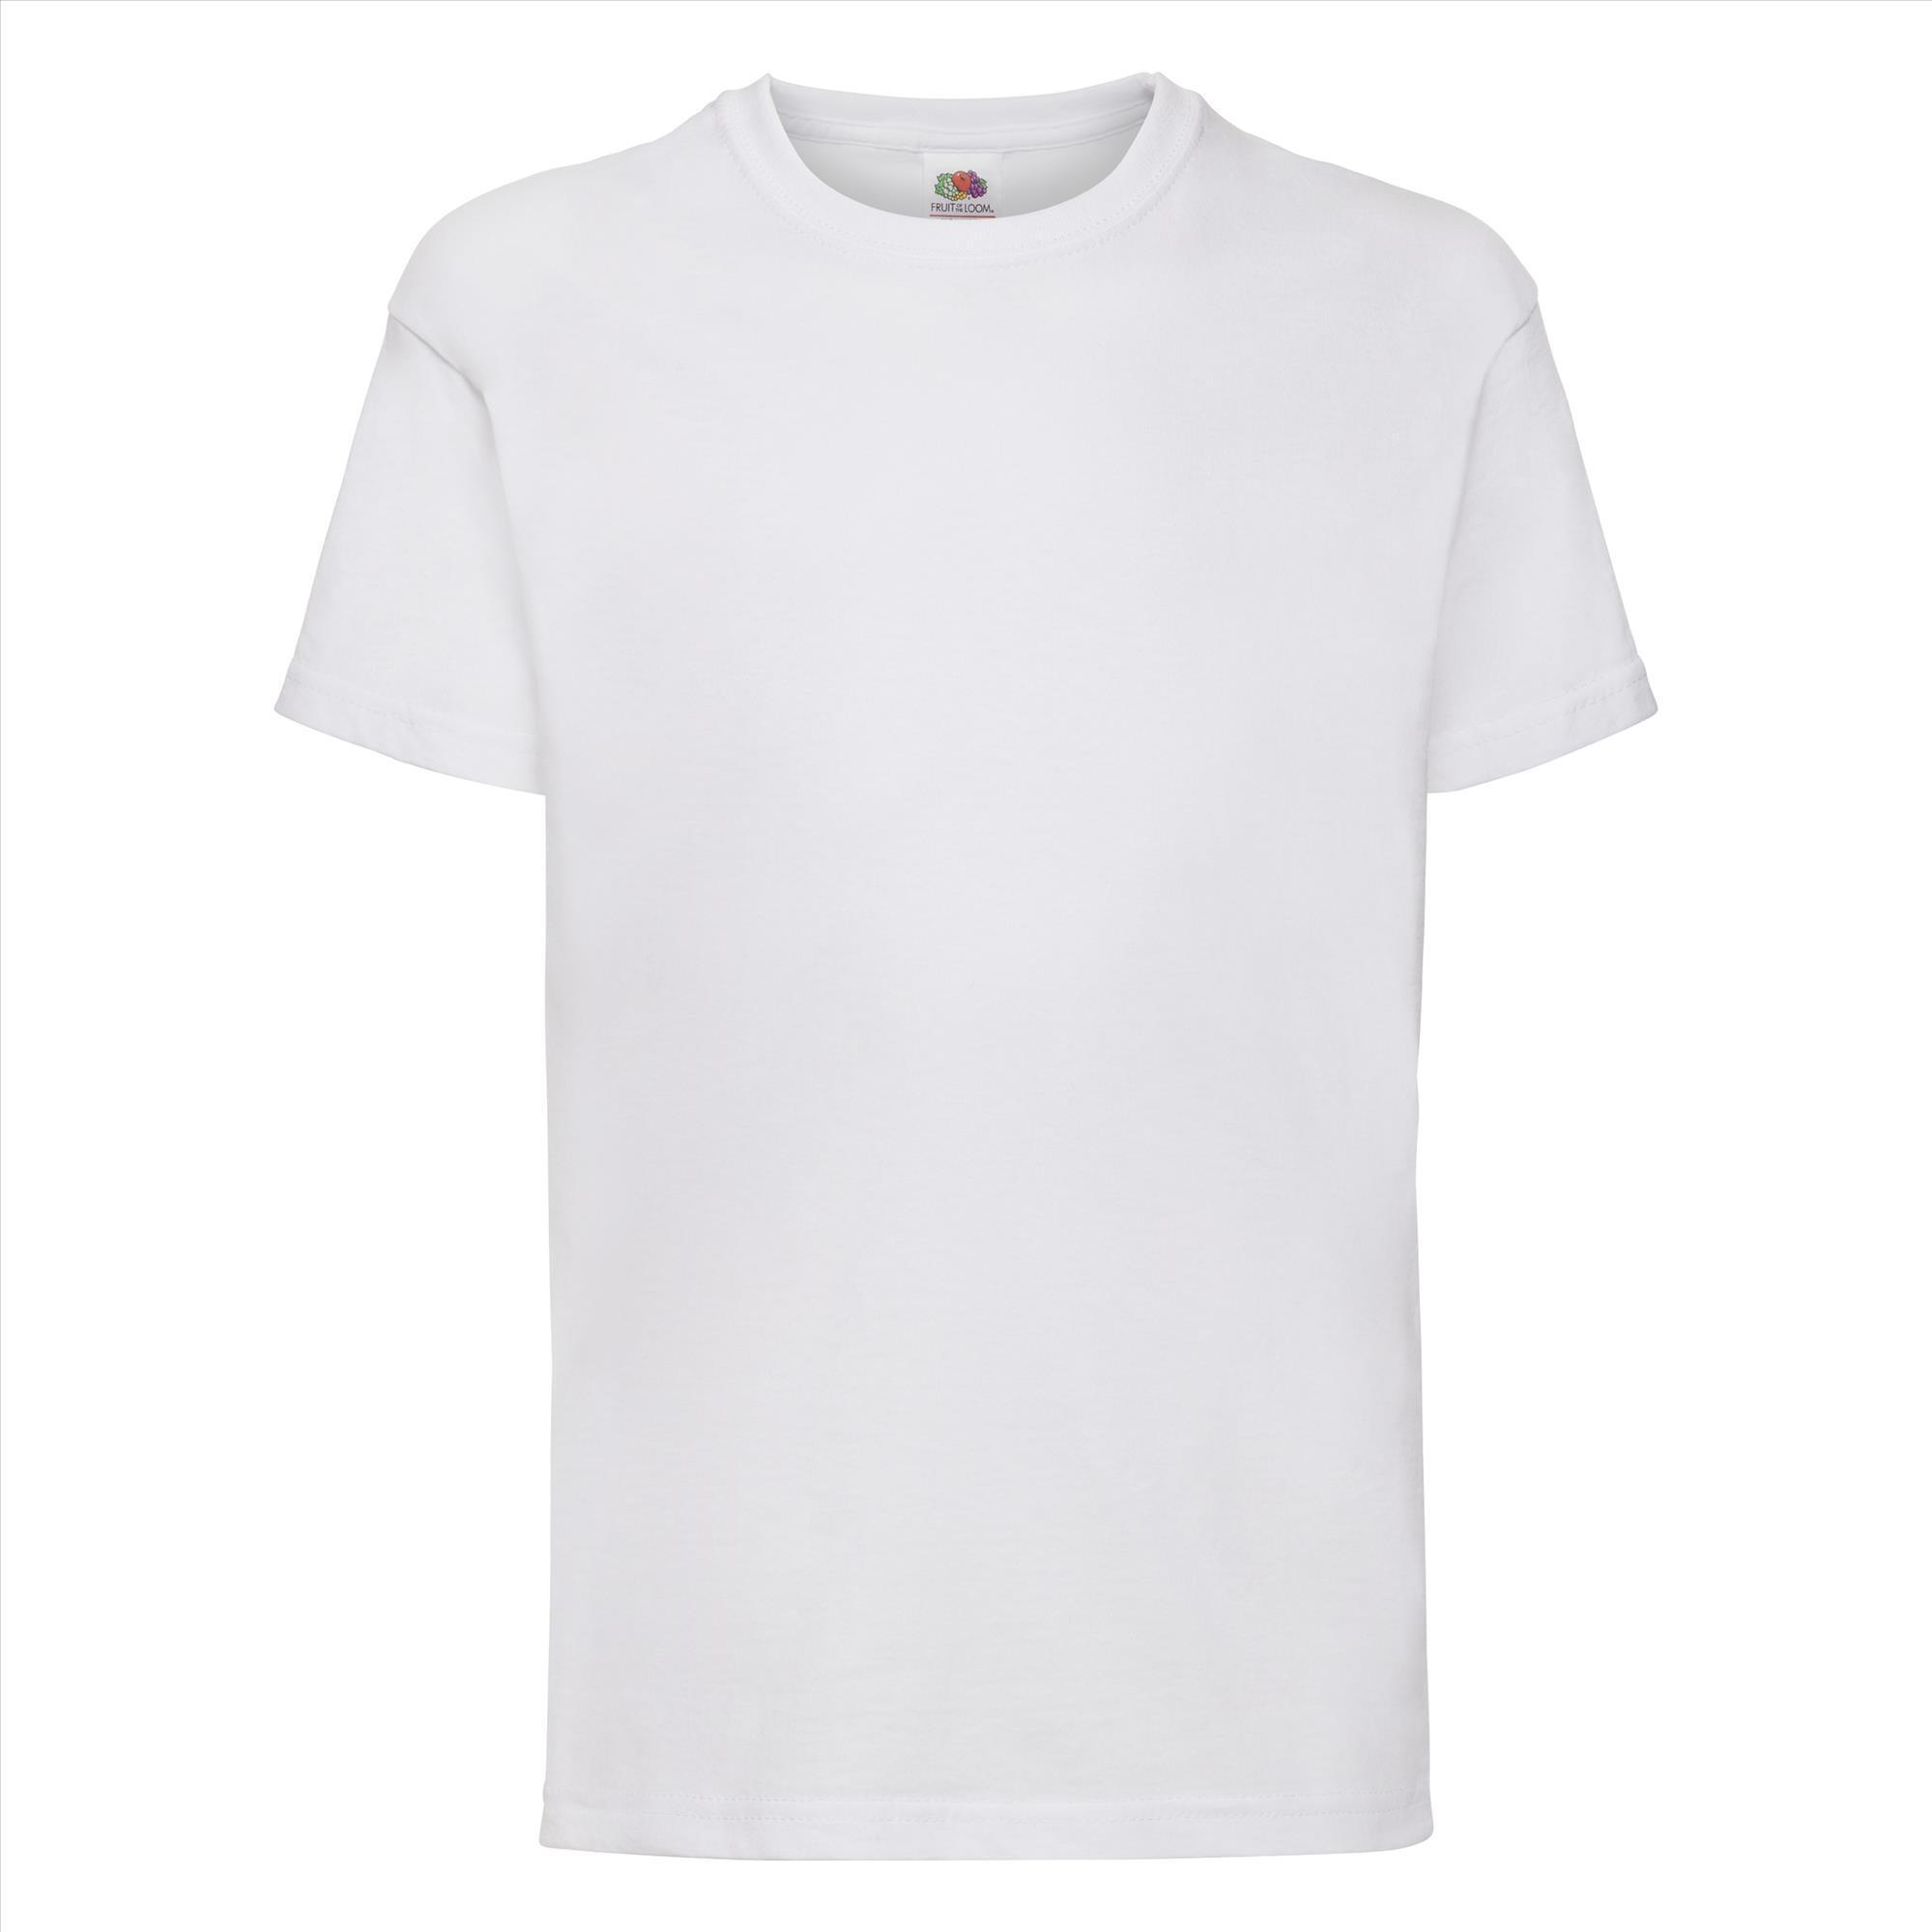 Gepersonaliseerde Kinder T-shirt wit Kinderkleding bedrukken